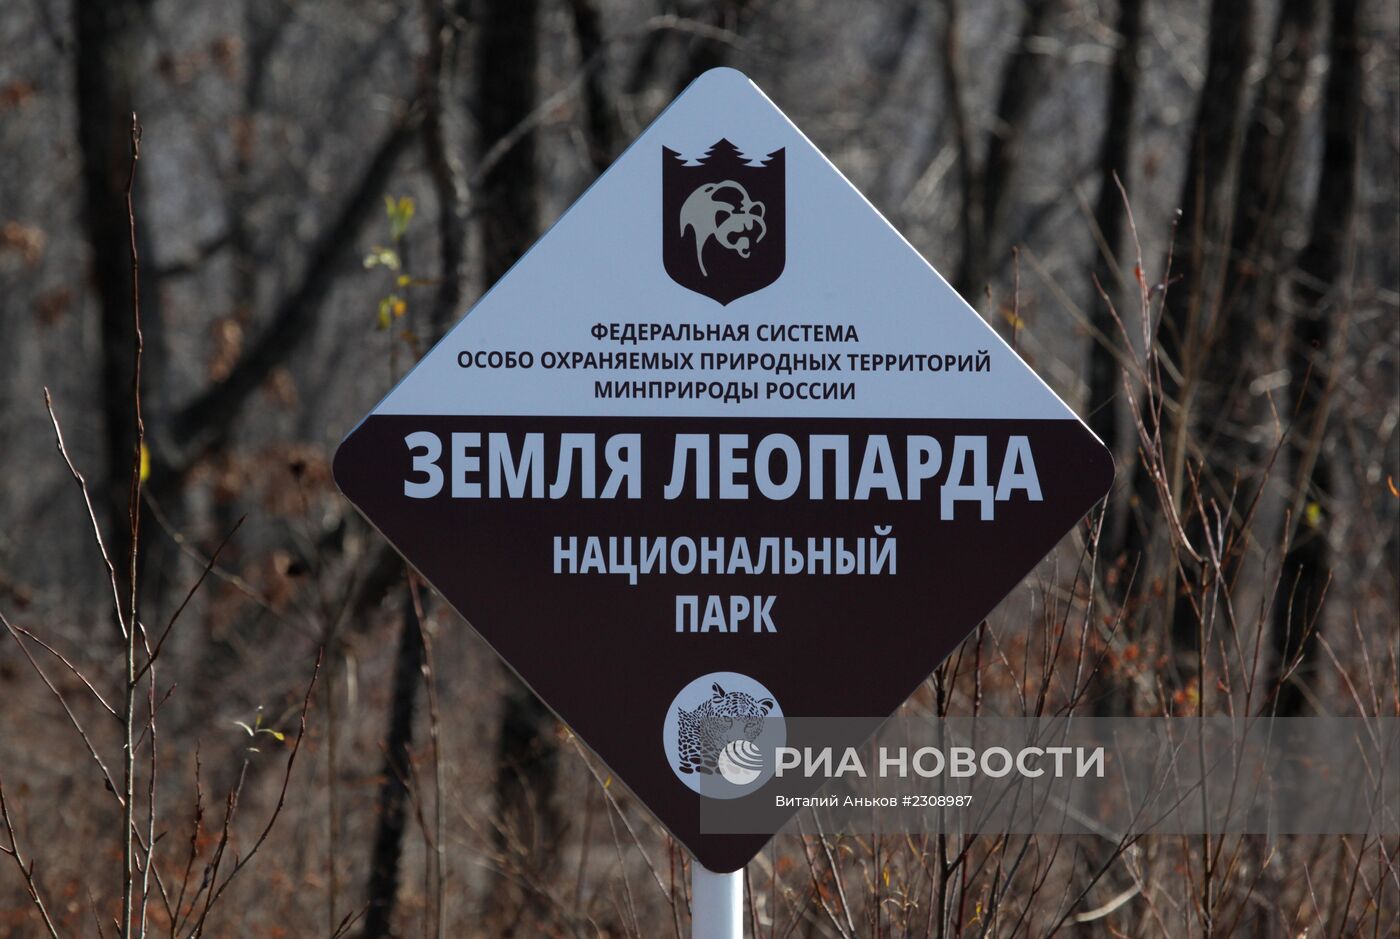 Национальный парк "Земля леопарда" в Приморском крае